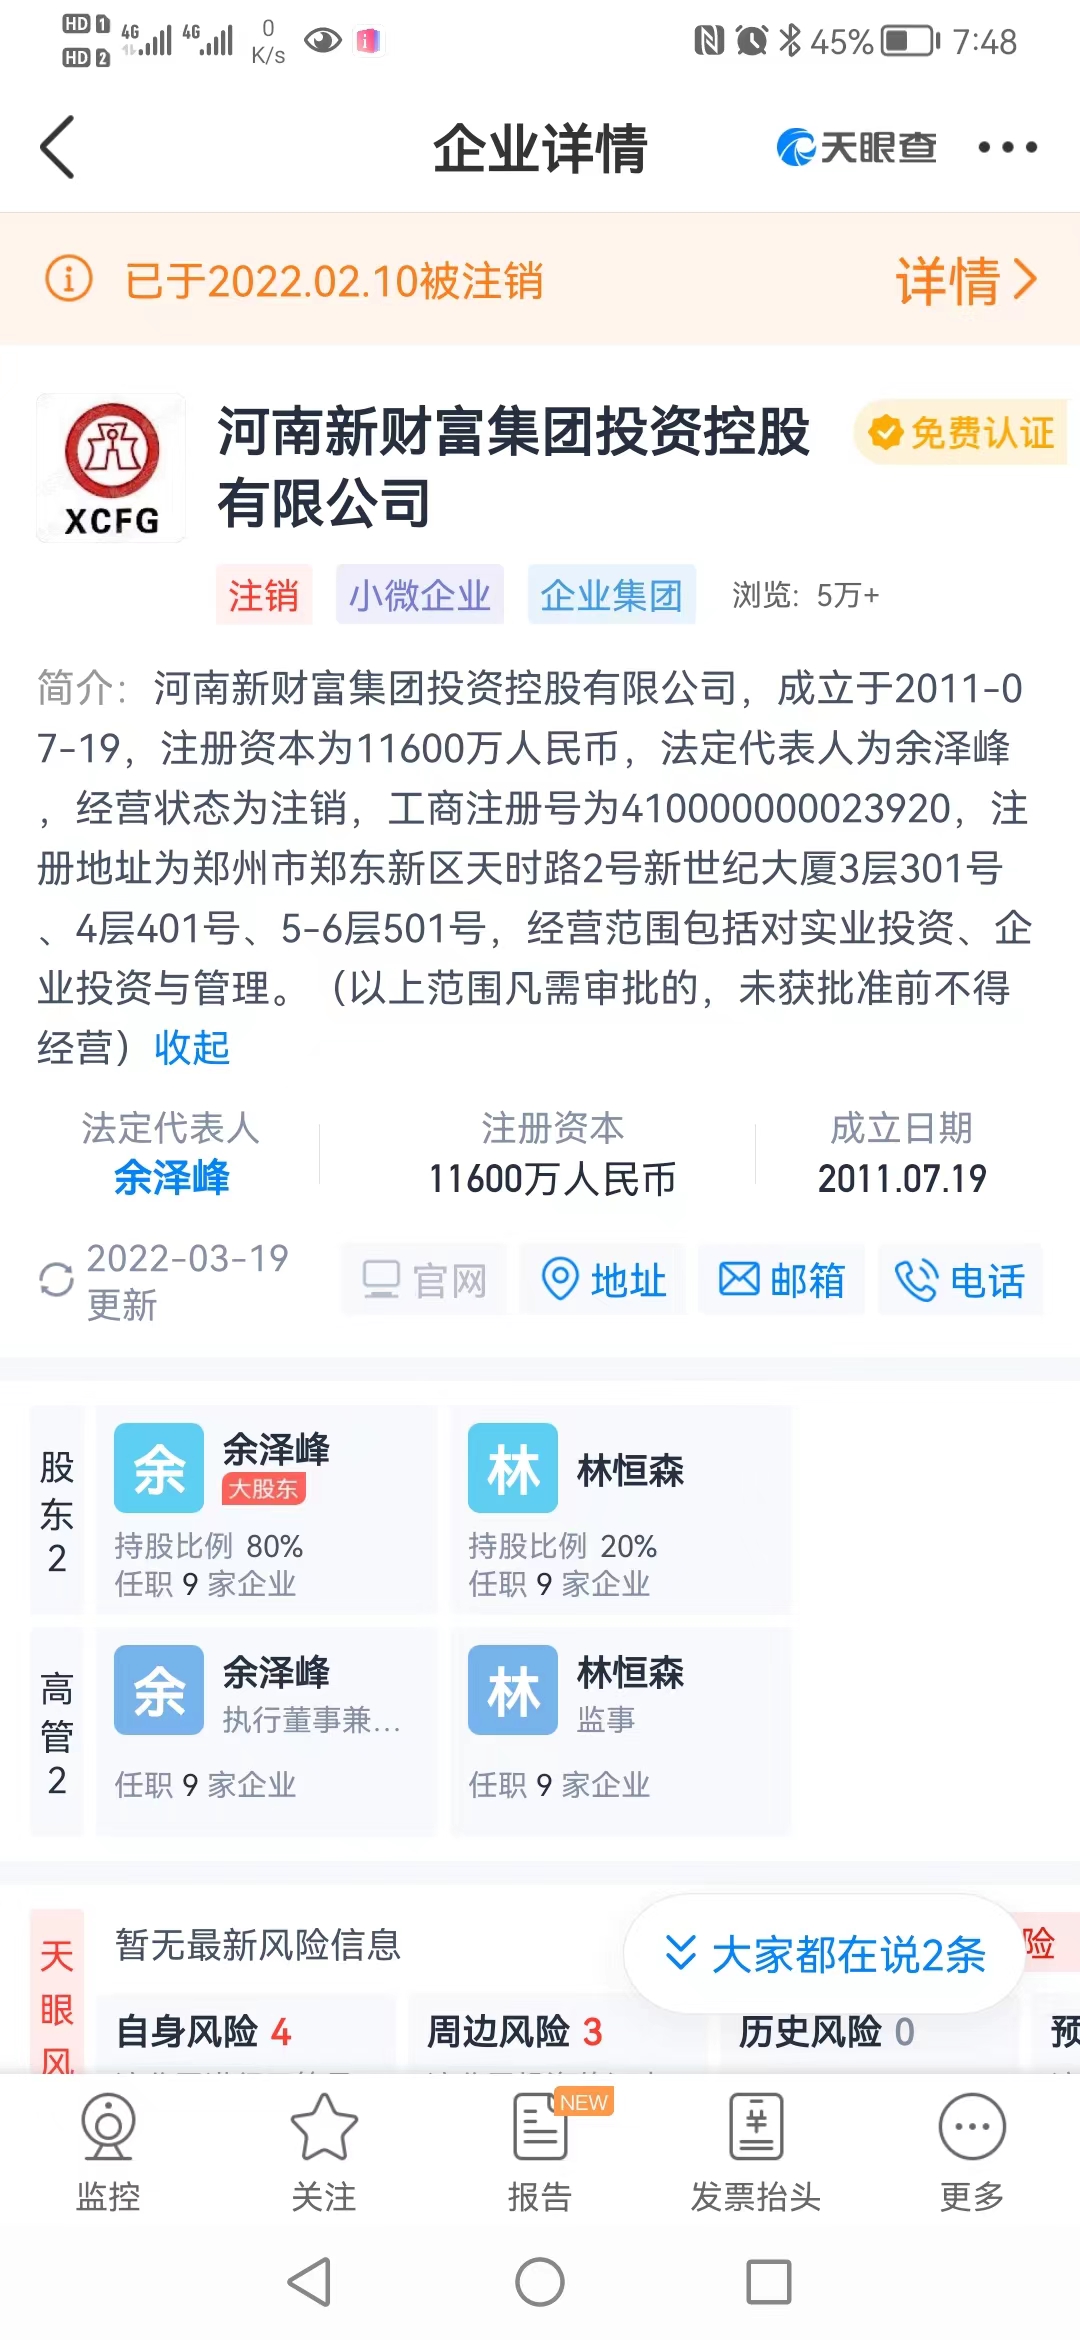 河南新財富集團的工商註冊信息。圖片來源於天眼查。